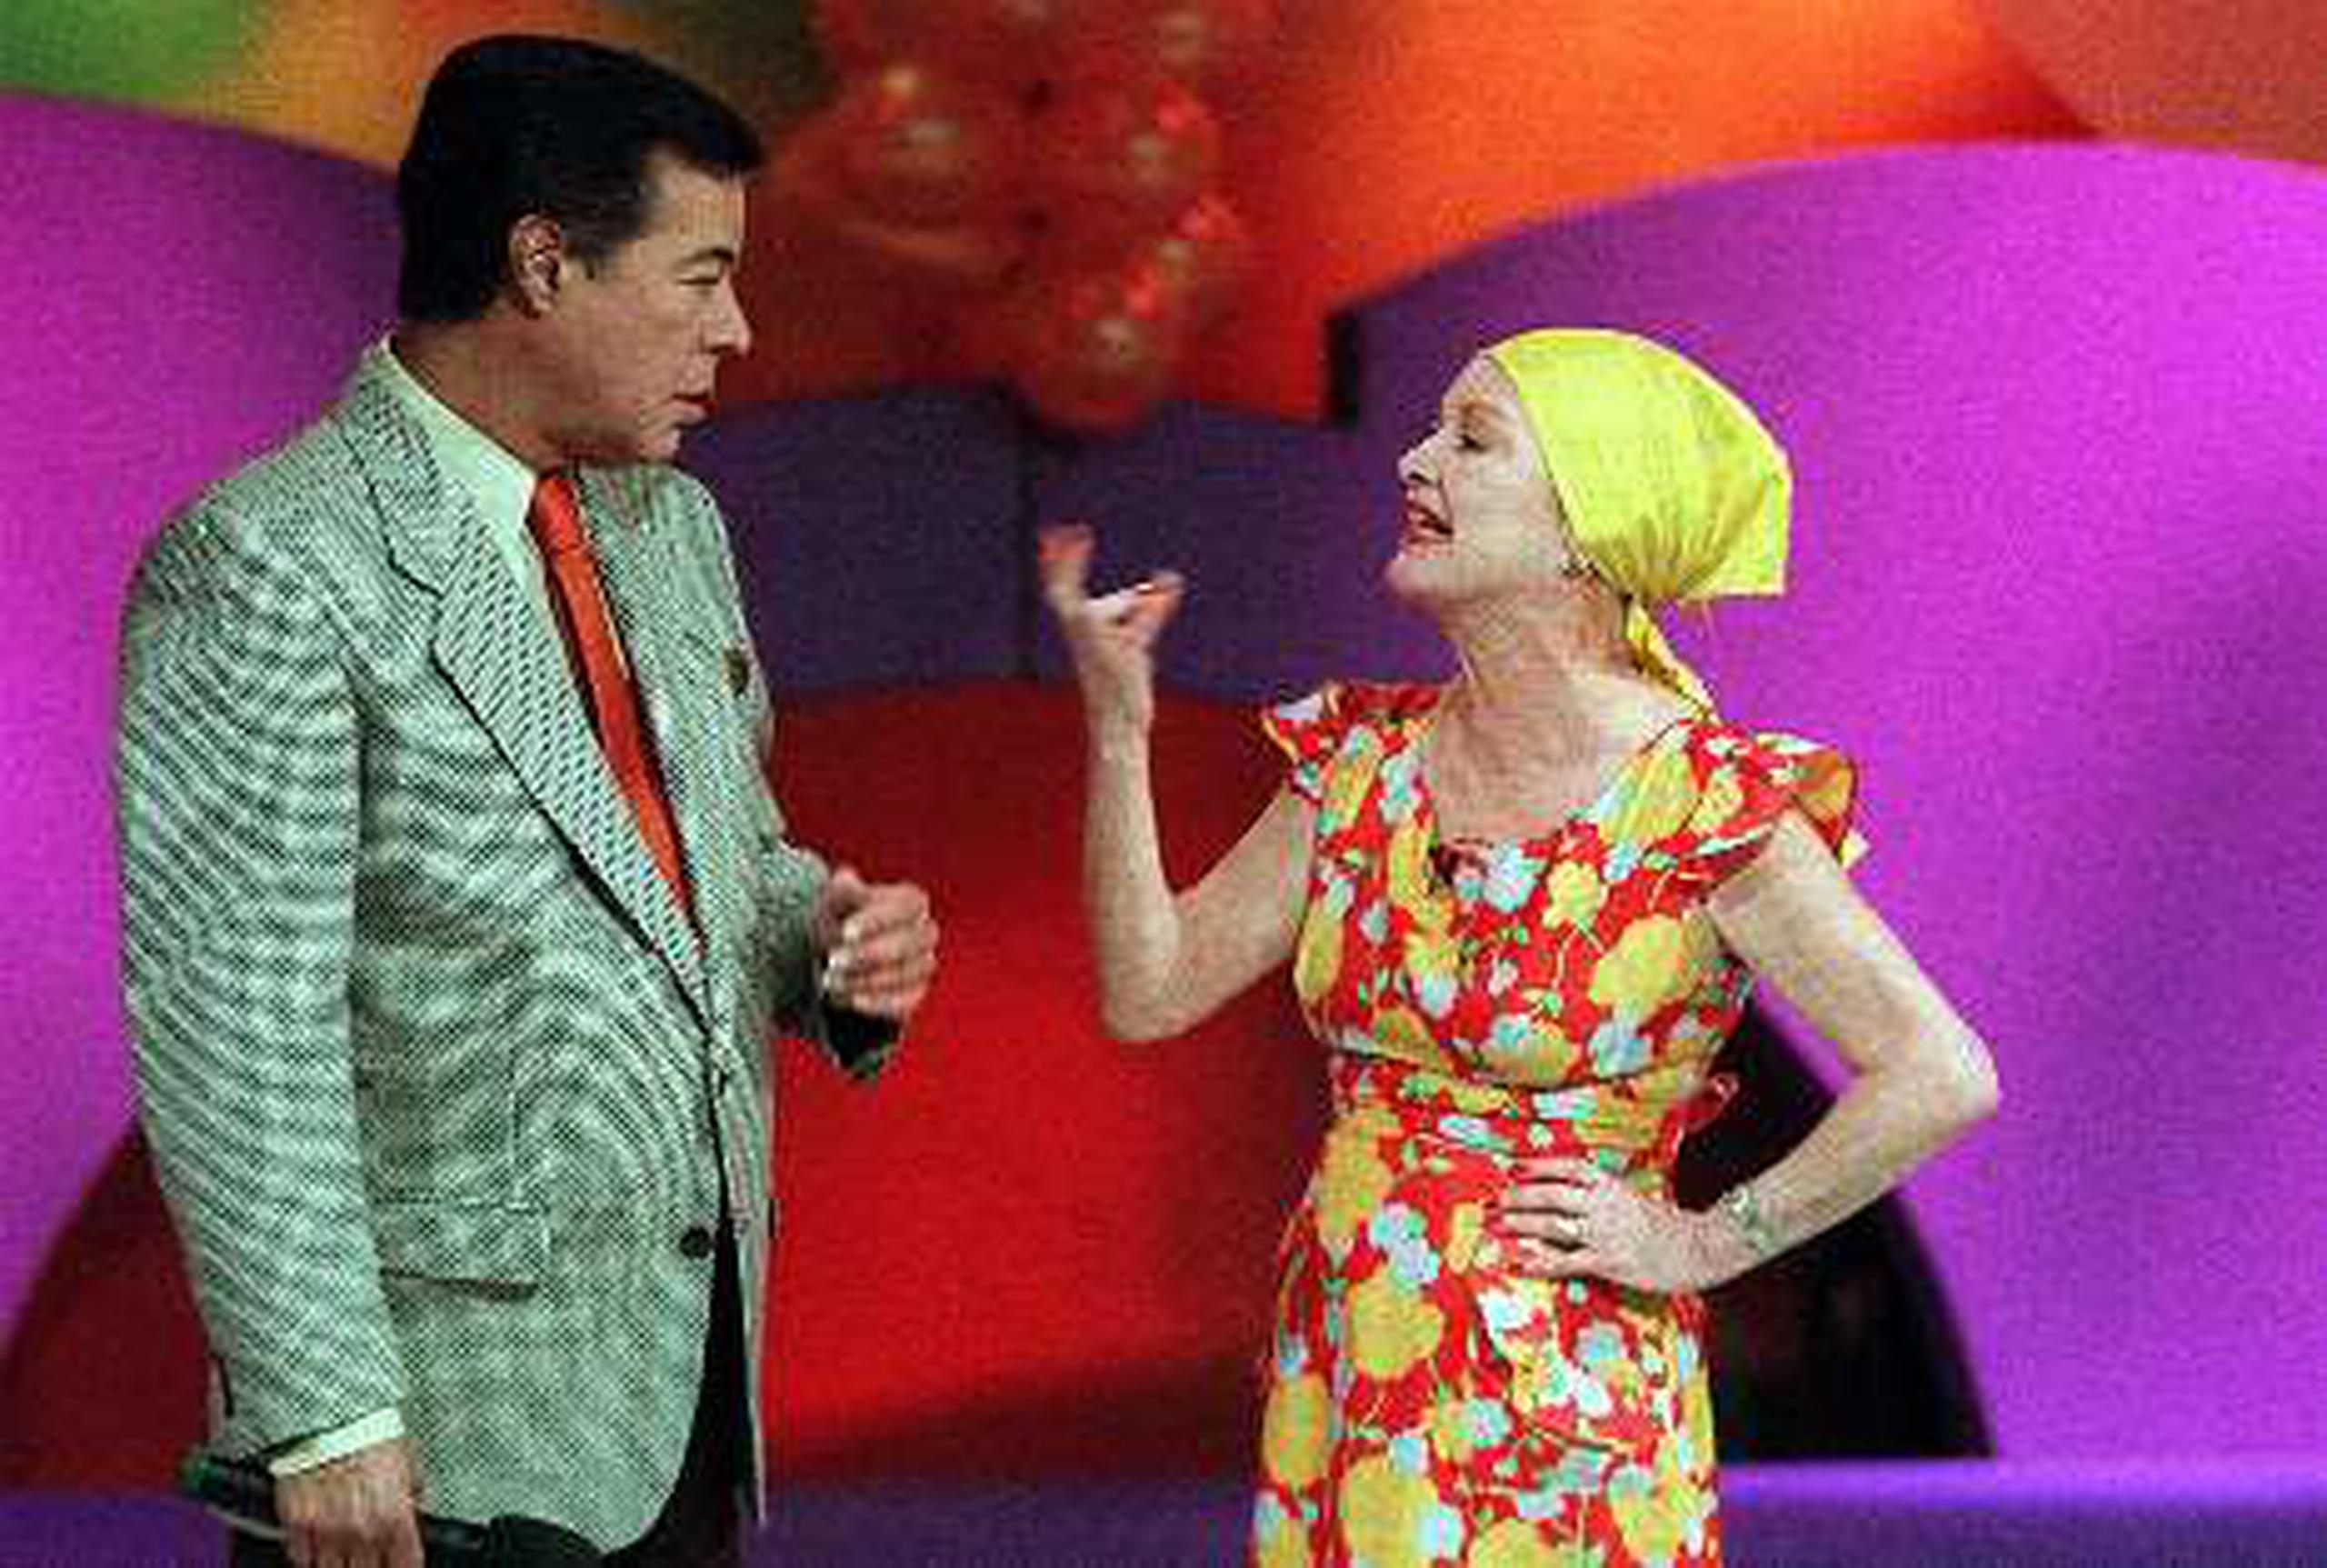 Las rutinas de chistes del animador Eddie Miró y la fenecida comediante Awilda Carbia, como “Flor Rosa”, eran parte esencial del show. &nbsp;<font color="yellow">(Archivo)</font>